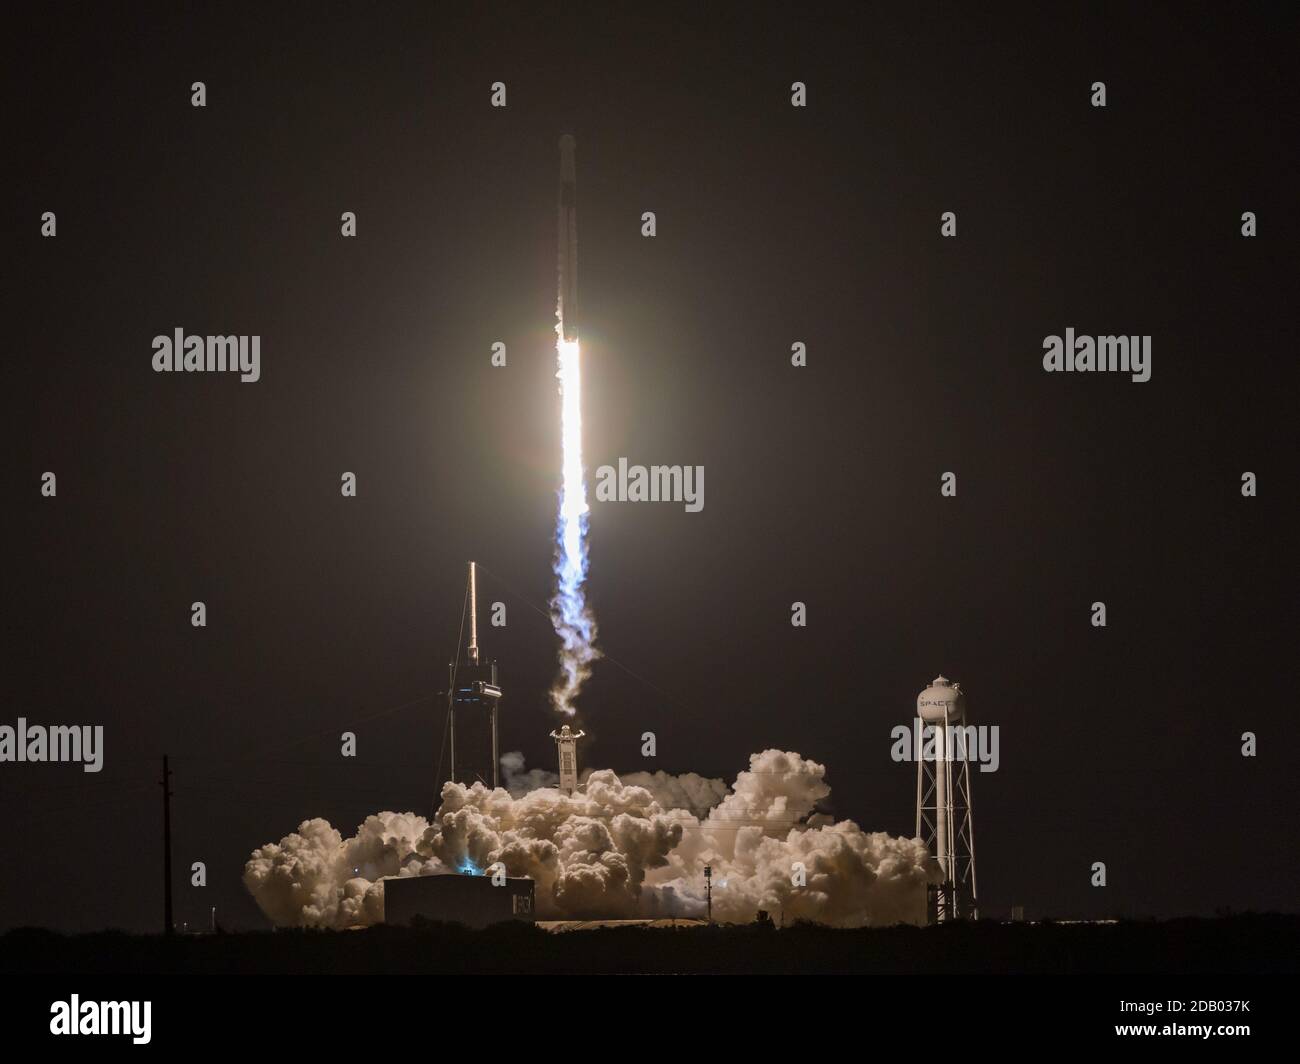 15 de noviembre de 2020: El cohete Spacex Falcon 9 con cápsula Crew Dragon se levanta del complejo de lanzamiento 39A en el Centro Espacial Kennedy para transportar a cuatro astronautas de la misión SpaceX Crew-1 a la Estación Espacial Internacional en Cabo Cañaveral, FL Romeo T Guzman/Cal Sport Media. Foto de stock